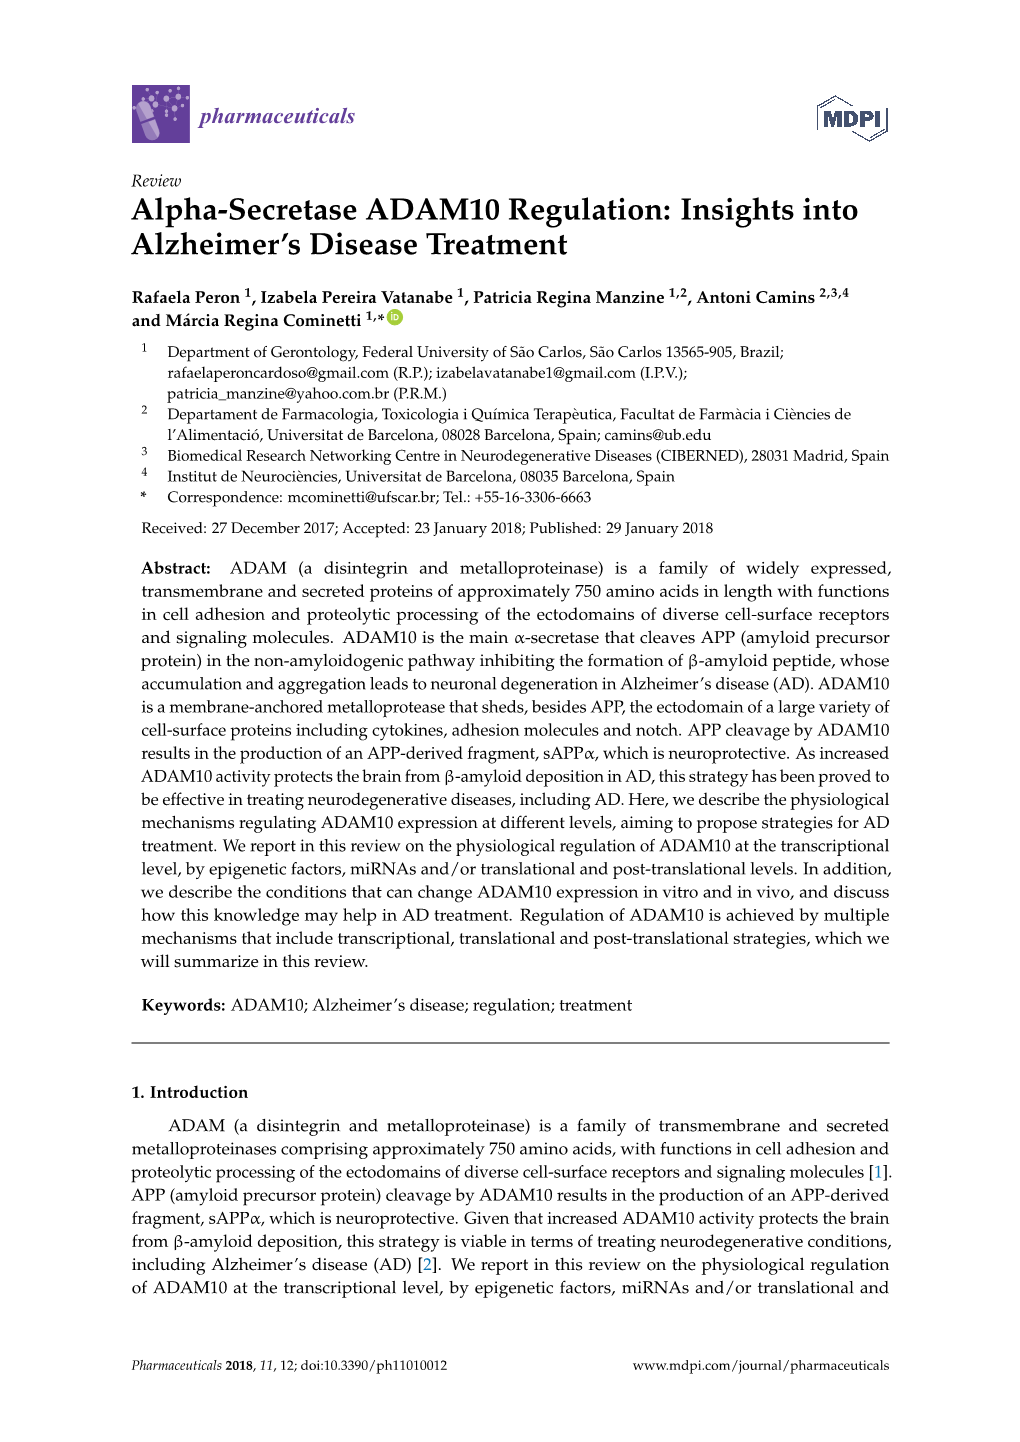 Alpha-Secretase ADAM10 Regulation: Insights Into Alzheimer’S Disease Treatment